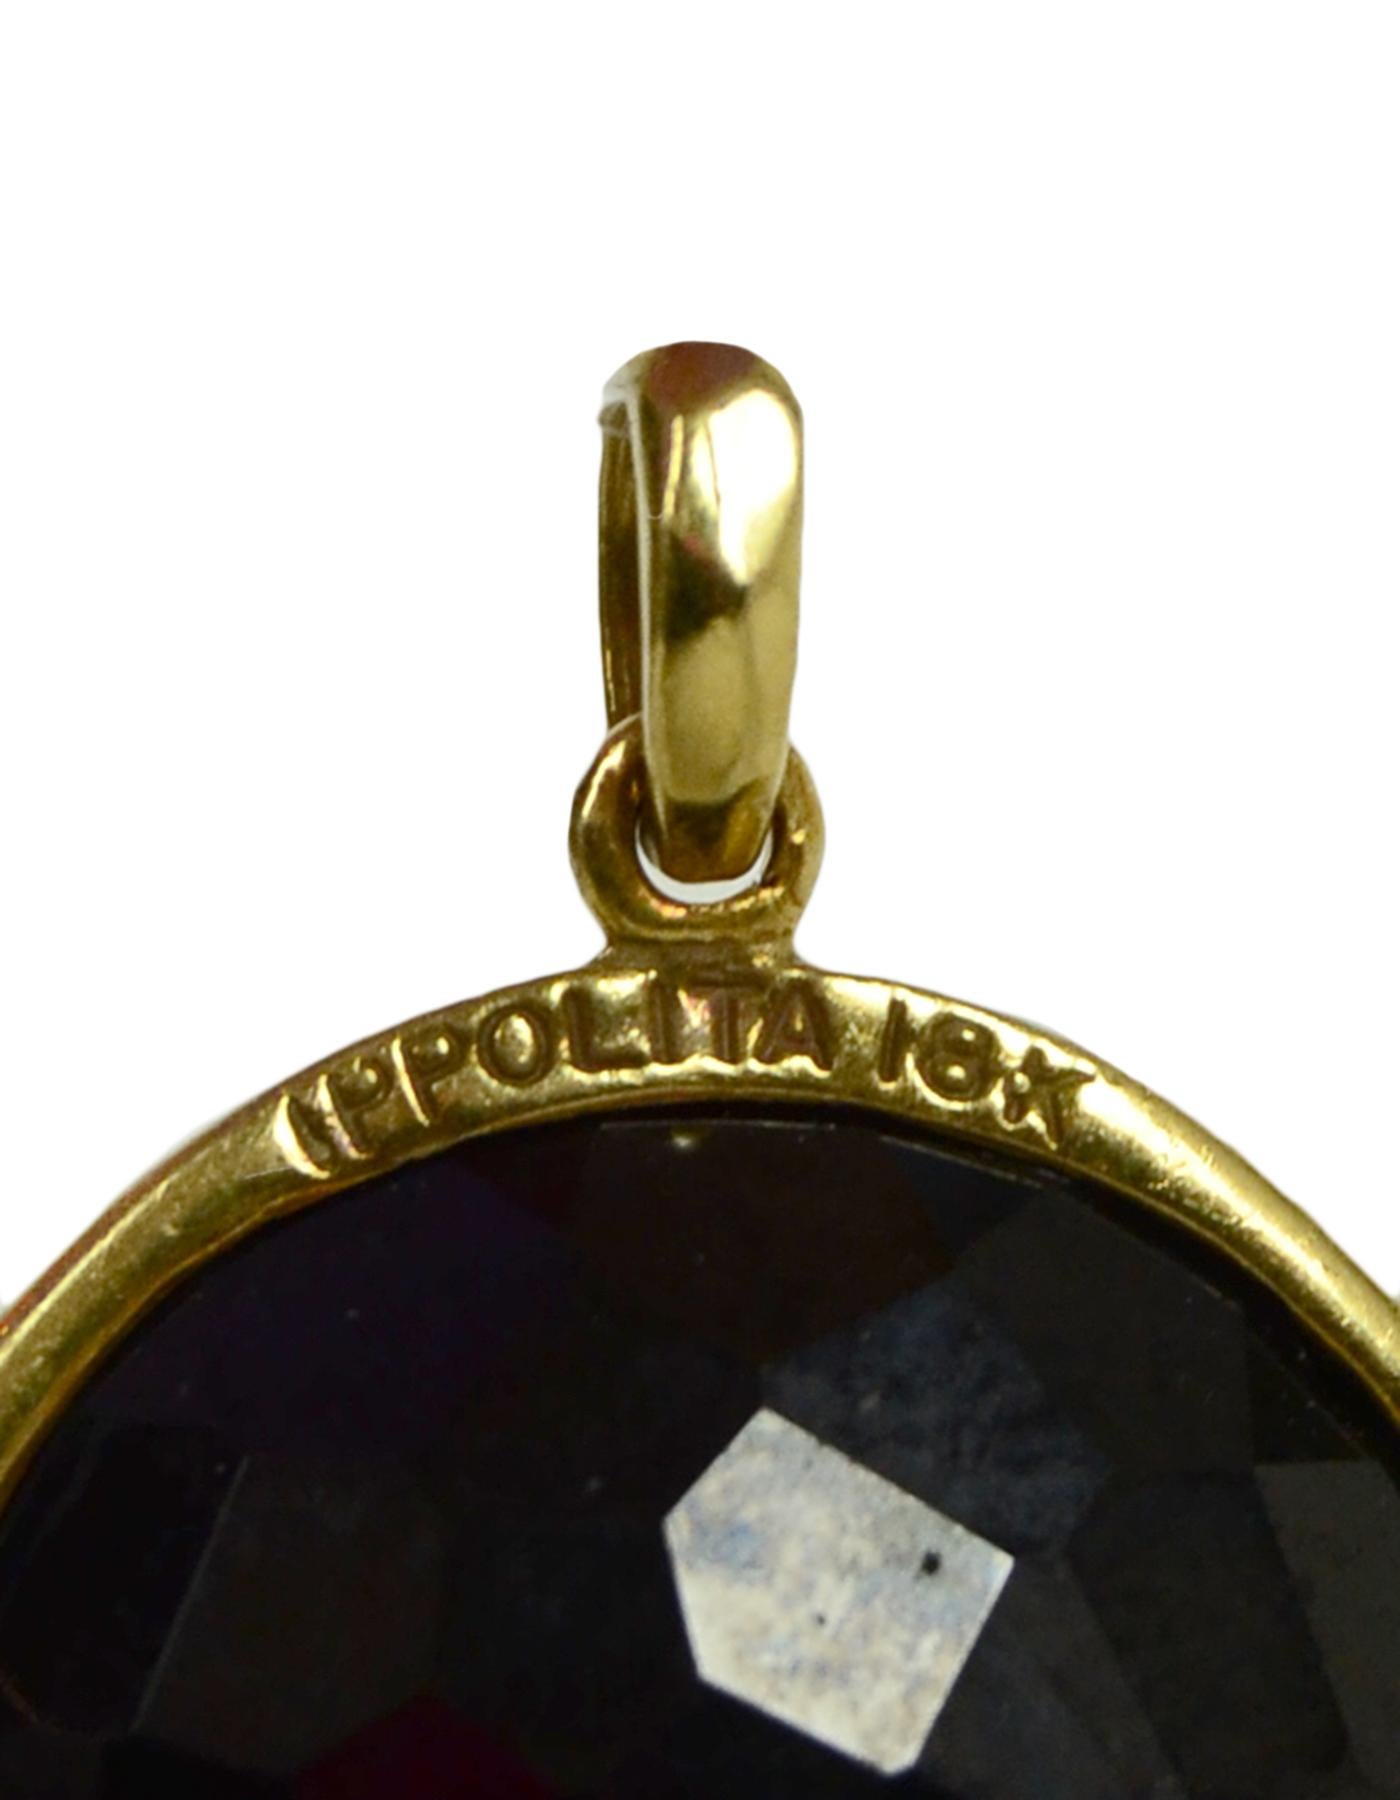 Women's Ippolita Black Onyx Bezel Charm/Pendant For Necklace Set in 18K Gold